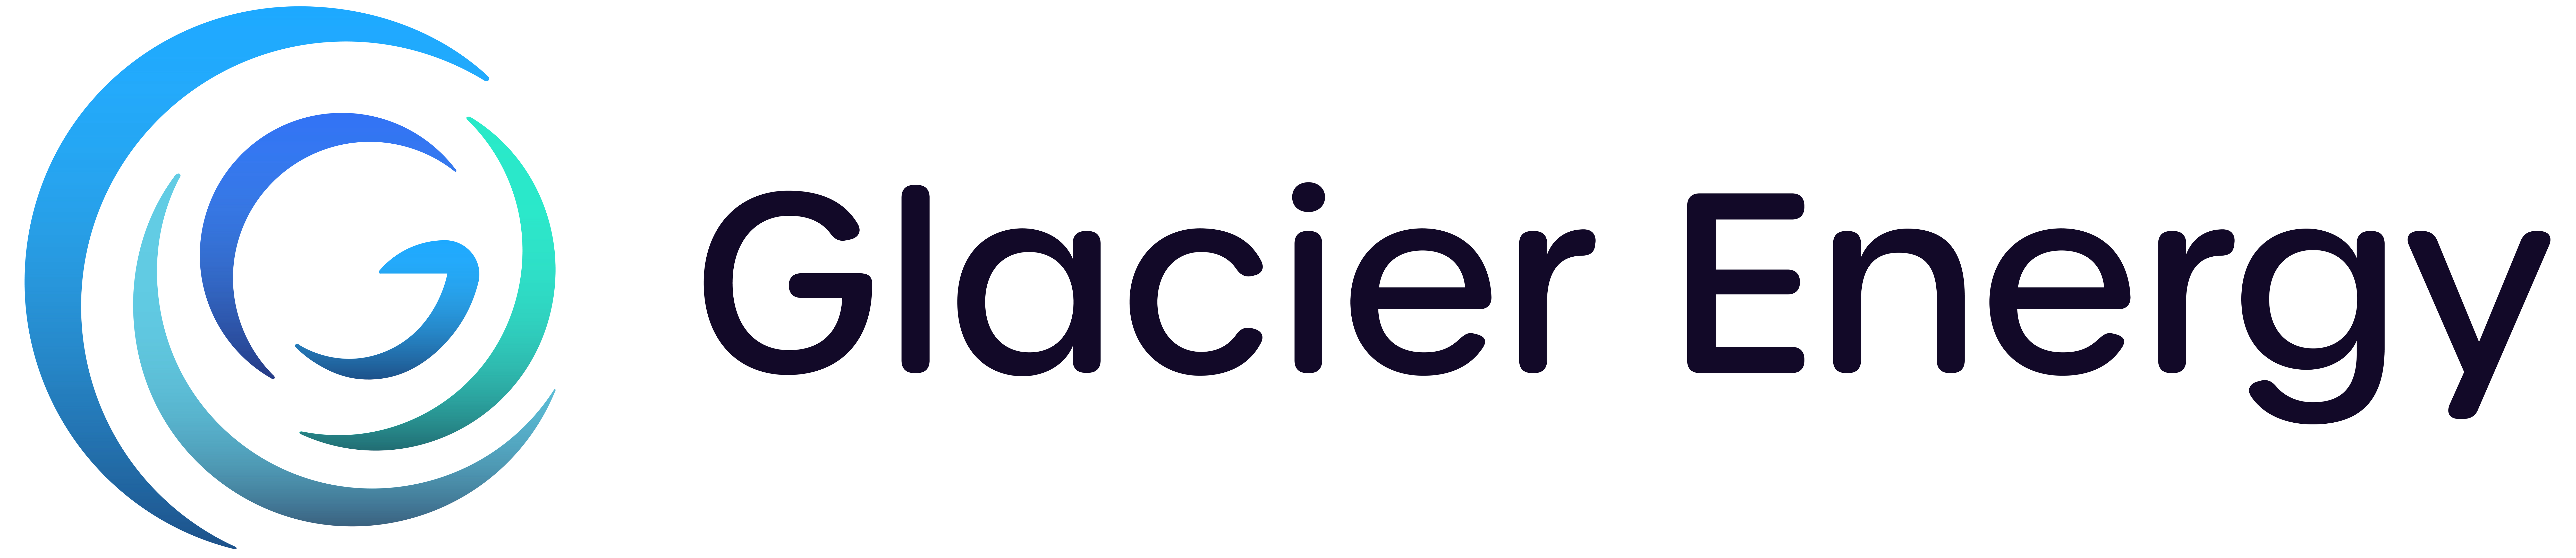 Glacier Energy Logo (1)